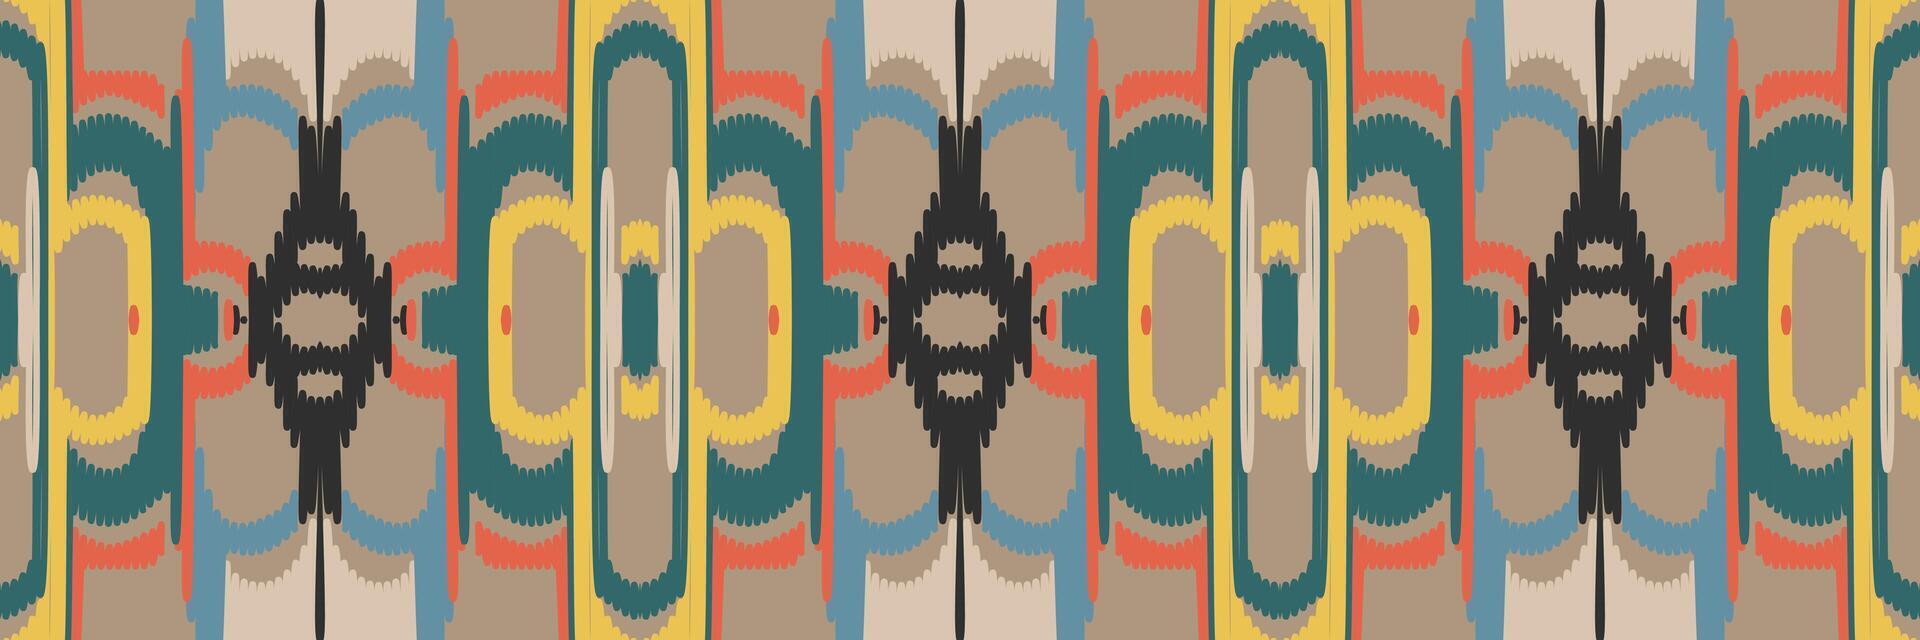 motif ikat en tribal. géométrique ethnique traditionnel. style rayé mexicain. conception pour le fond, papier peint, illustration vectorielle, tissu, vêtements, batik, tapis, broderie. vecteur